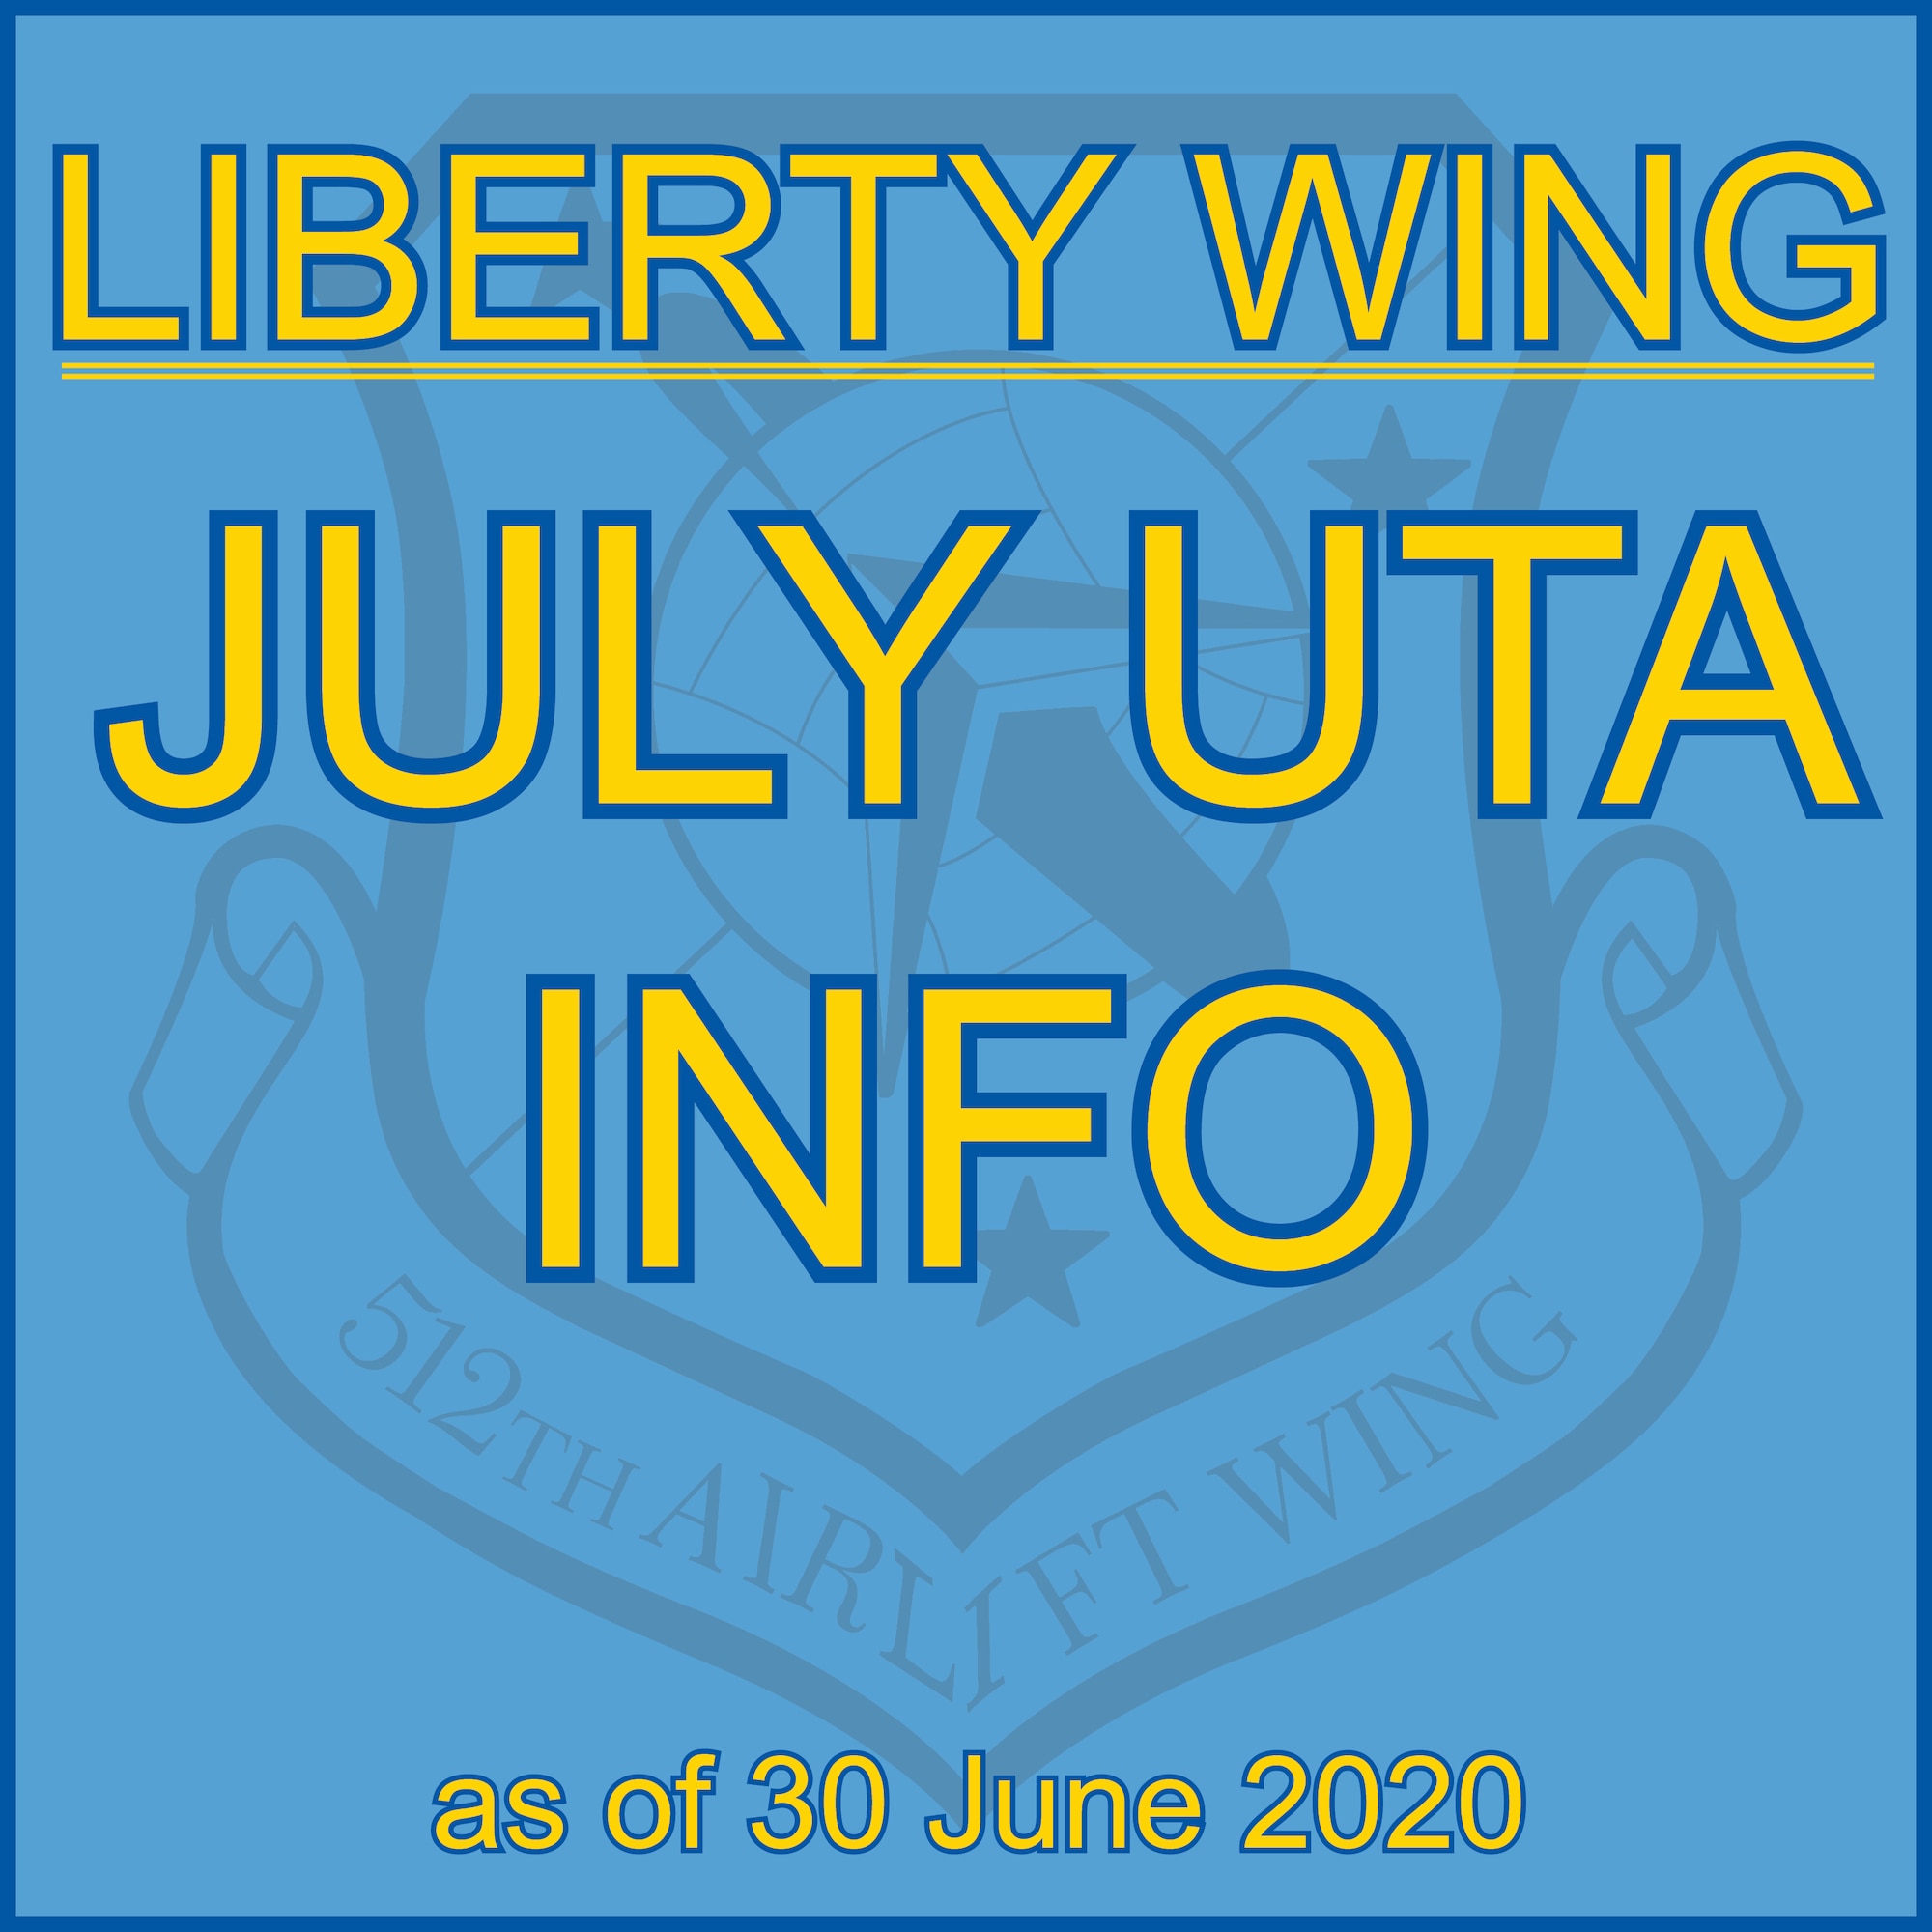 Liberty Wing July UTA Info